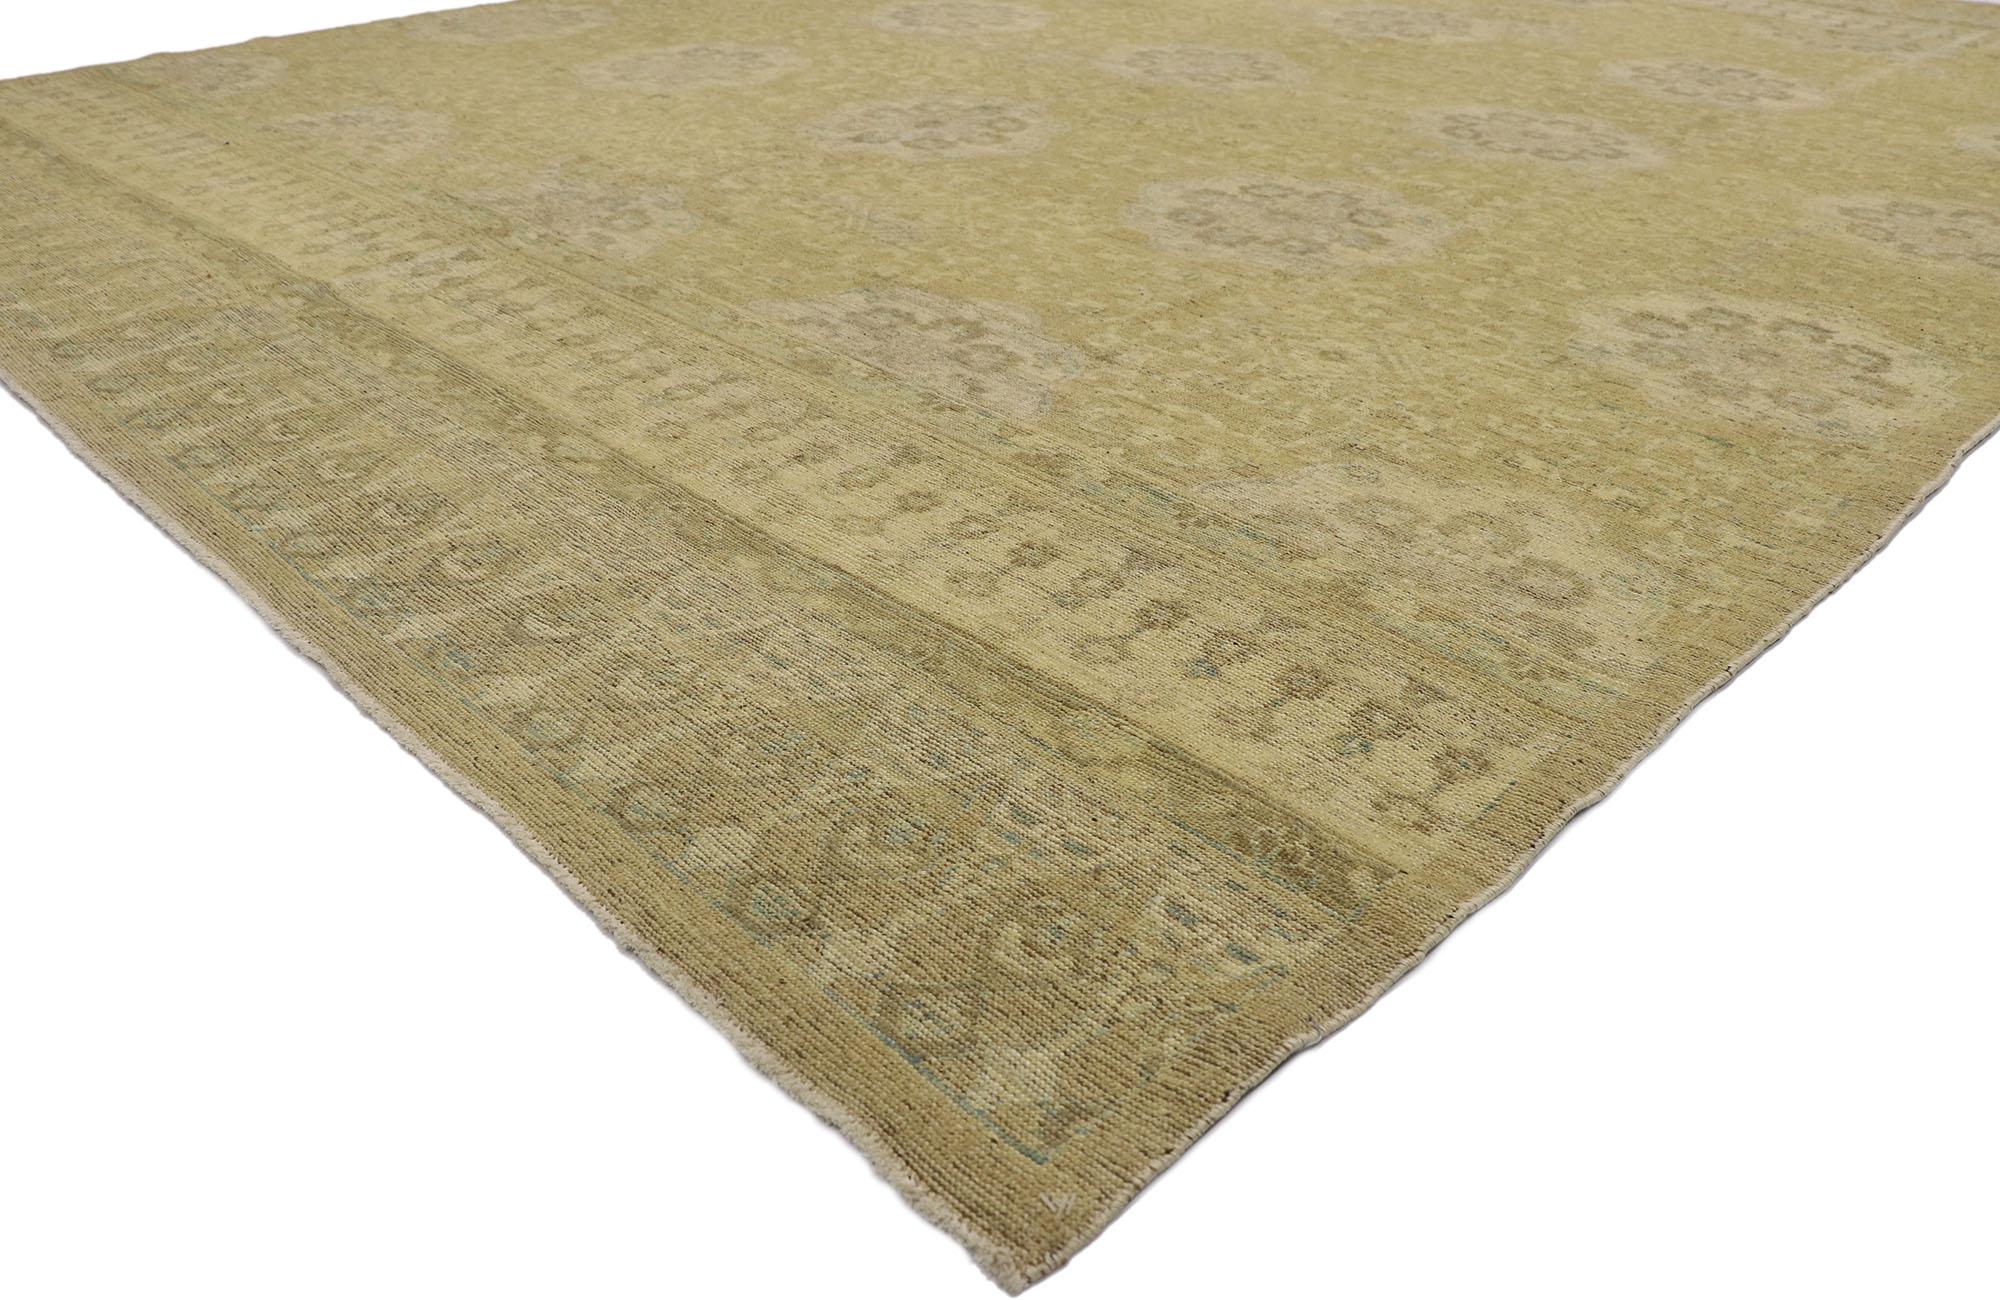 78153 Vintage-Khotan-Teppich mit europäischem Stil 09'02 x 11'10. Dieser handgeknüpfte pakistanische Khotan-Teppich aus Wolle in neutralen Farben besticht durch seine schlichte Eleganz und verleiht ihm einen gepflegten, zeitlosen Look, der Wärme und